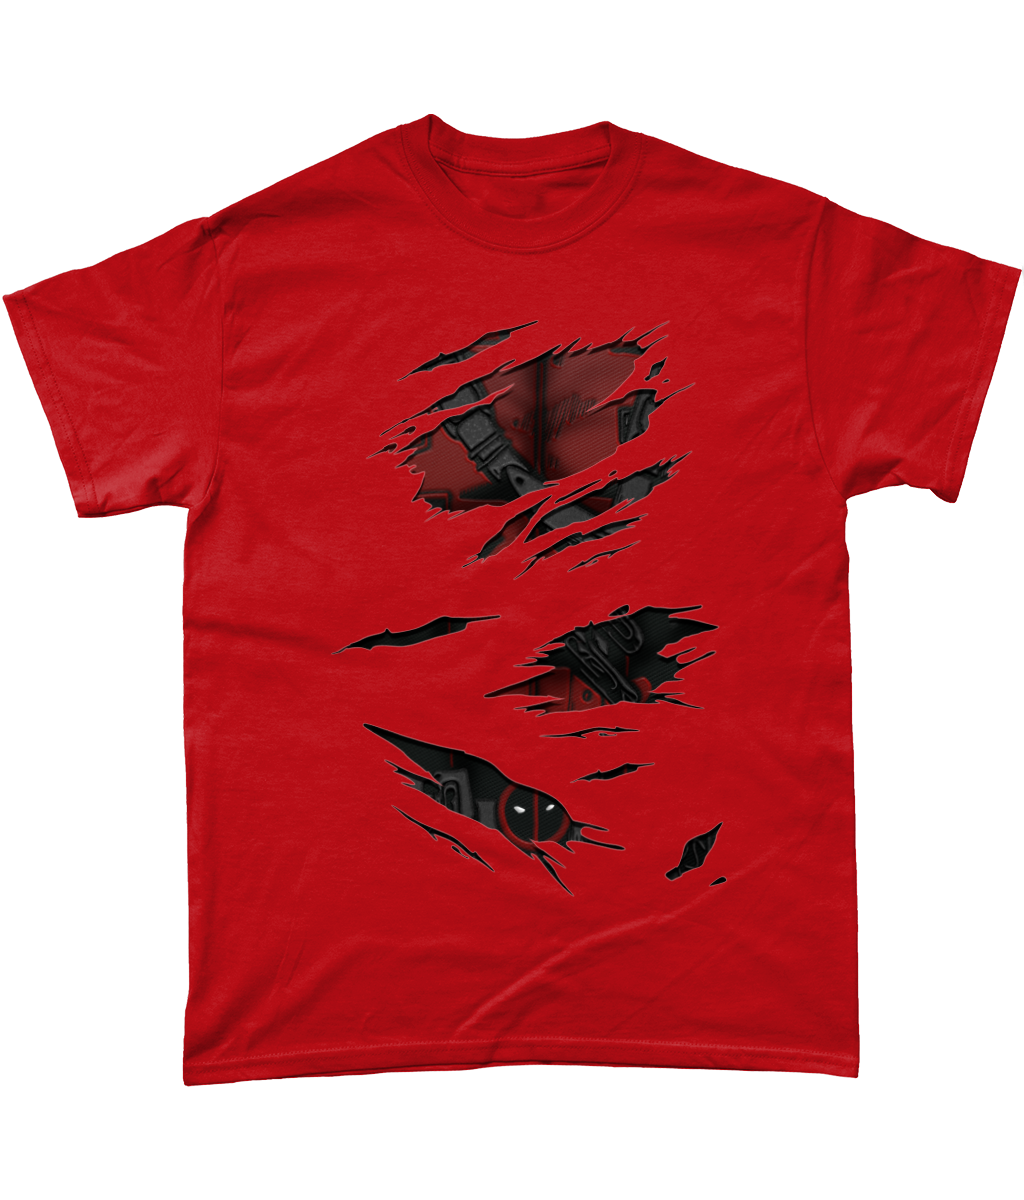 Deadpool Torn T-Shirt